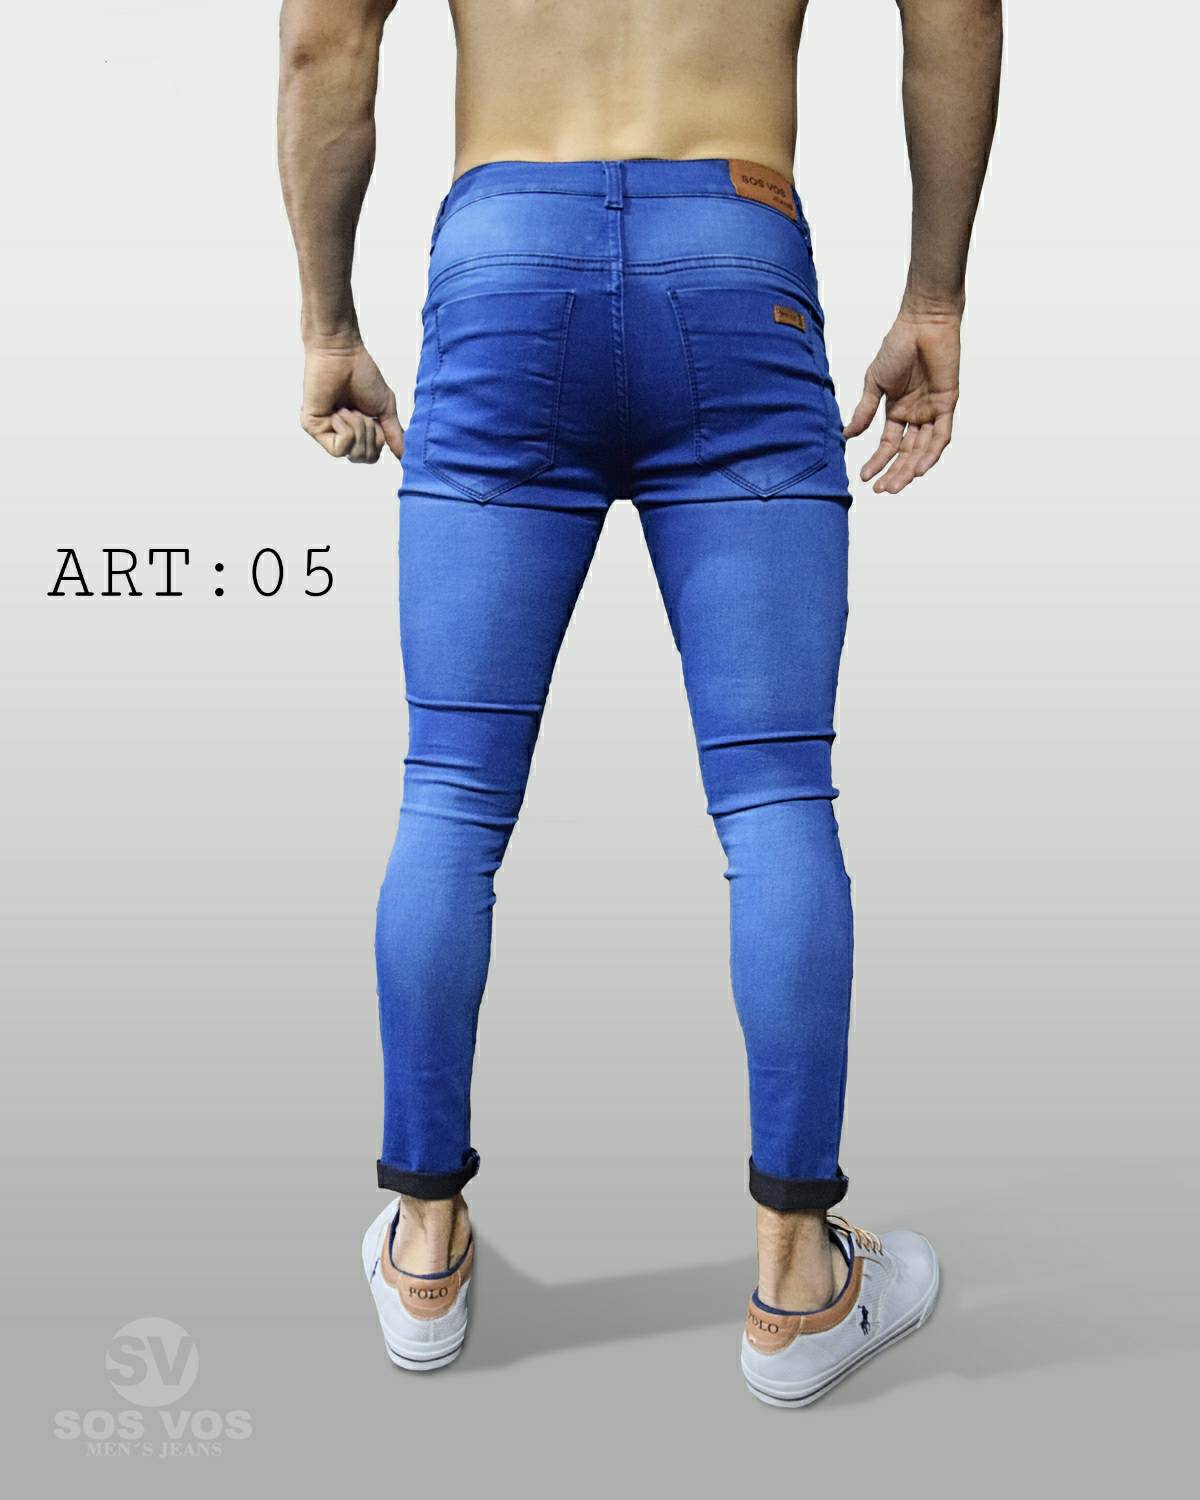 coser Pila de Destello Jean chupin elastizado Art 05 – Sos Vos Jeans – Tienda Online